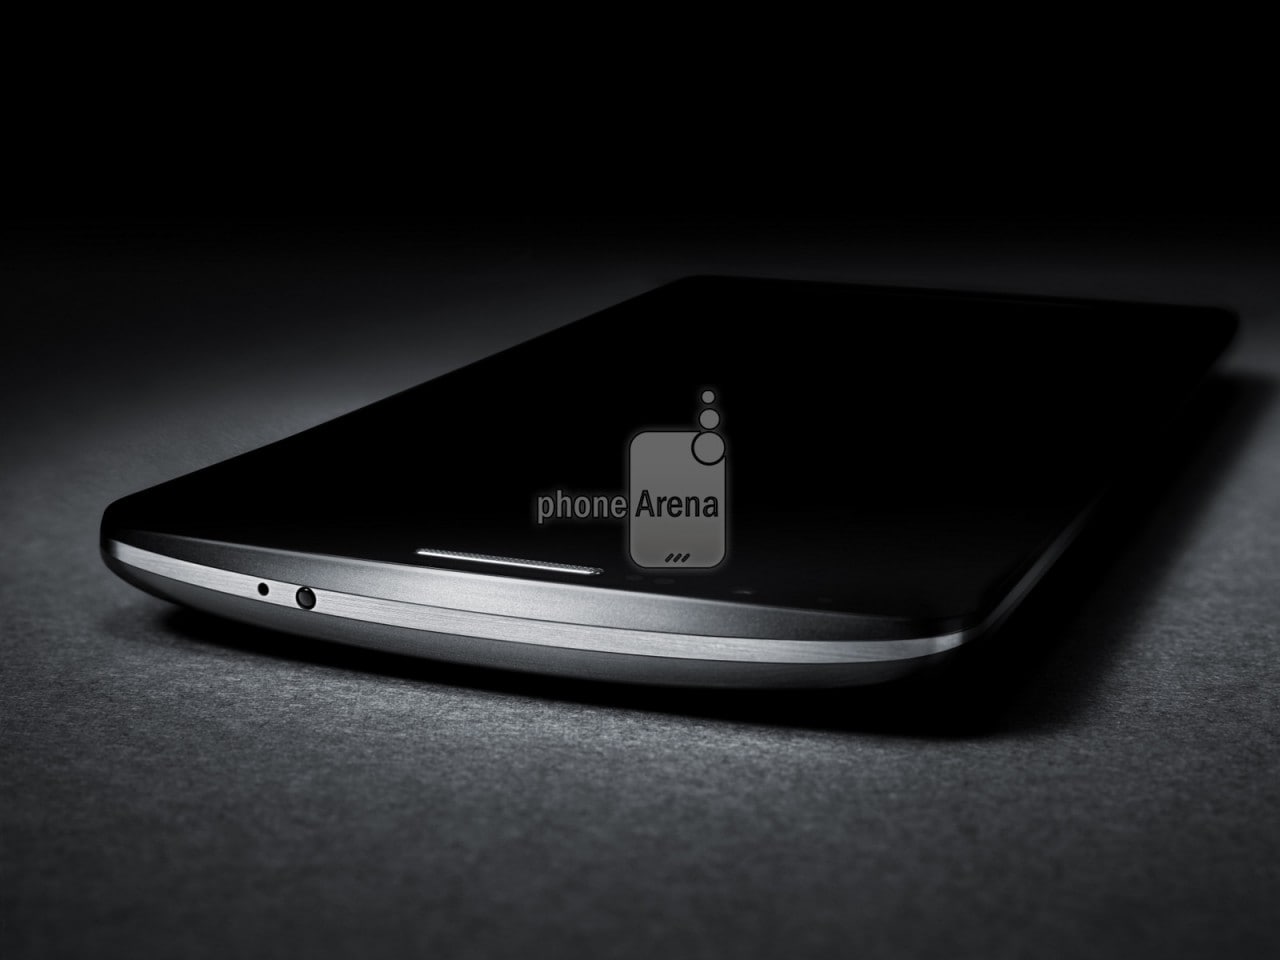 LG G3 in nuovi render nei colori grigio, argento e oro (foto)